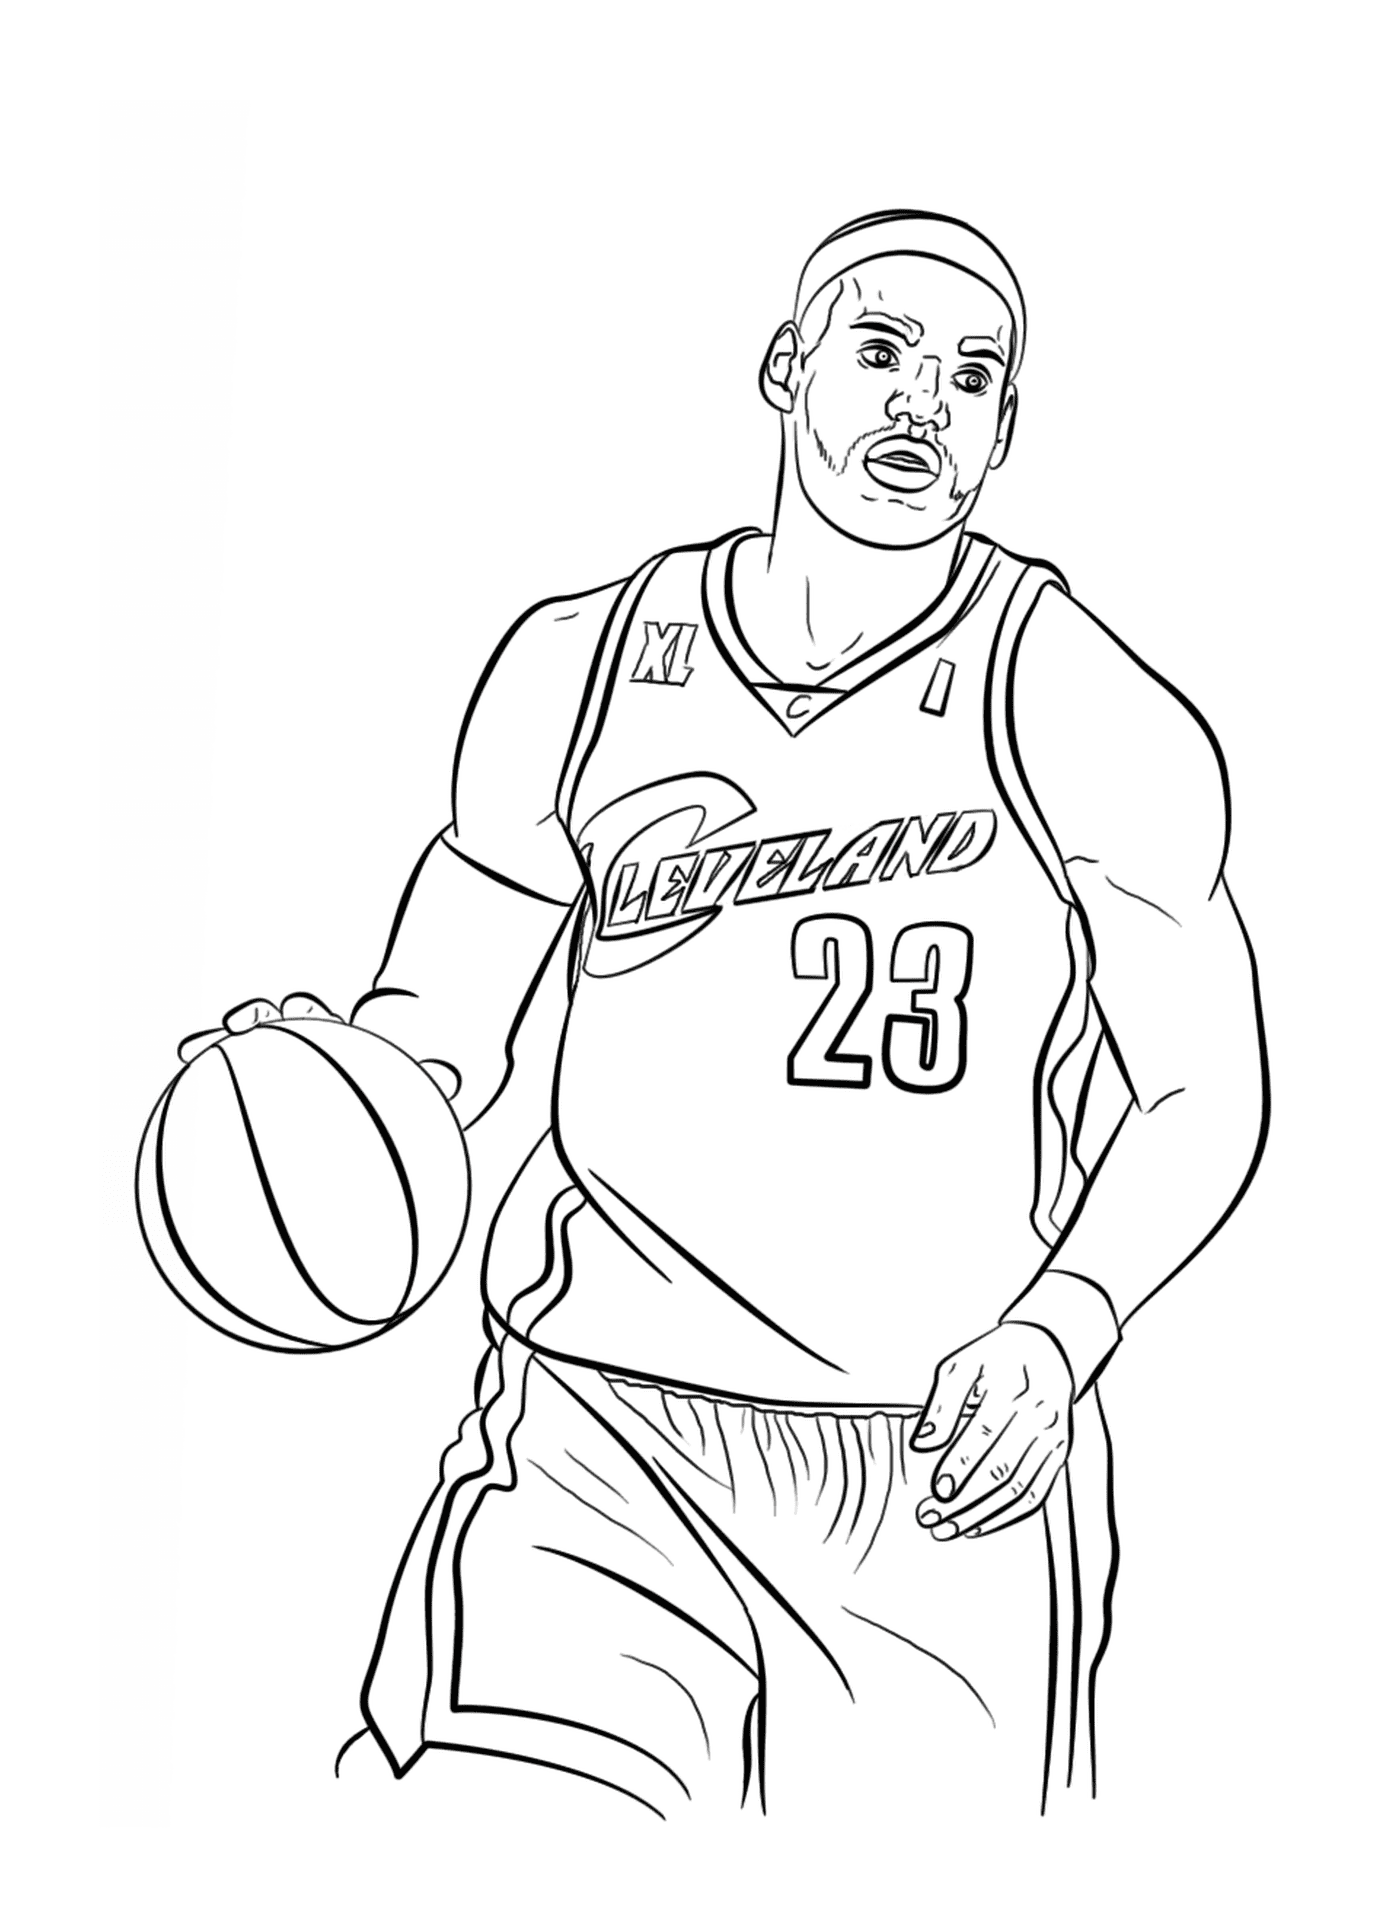  ليبرون جايمس، لاعب كرة سلة لرابطة كرة السلة الوطنية 